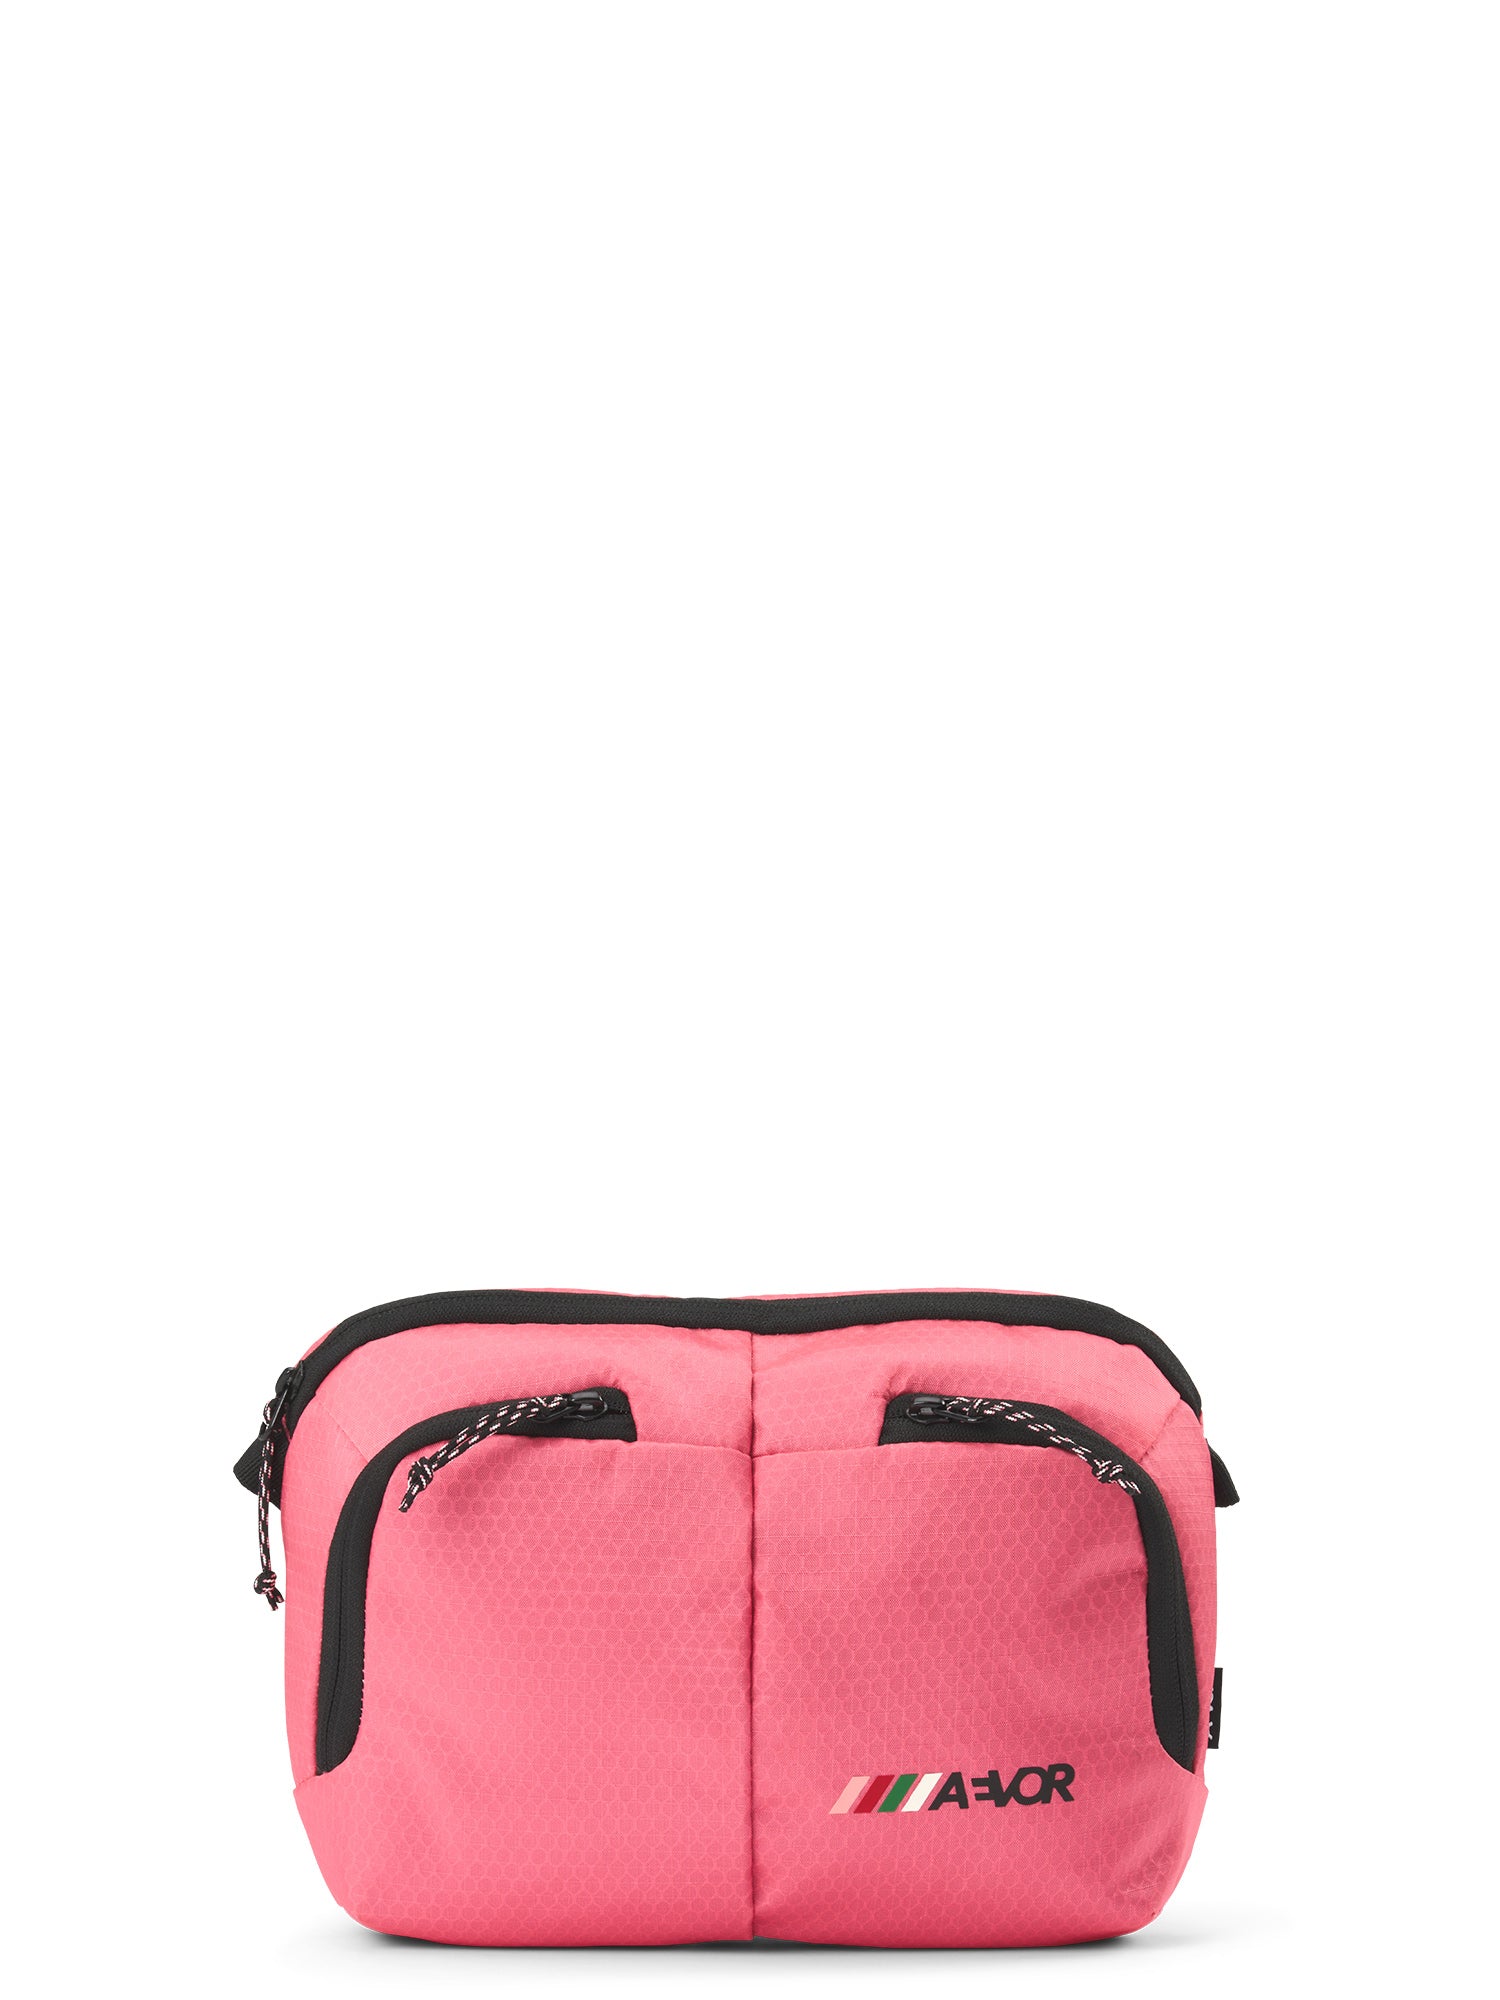 AEVOR Sacoche Bag - Proof Pink Flash